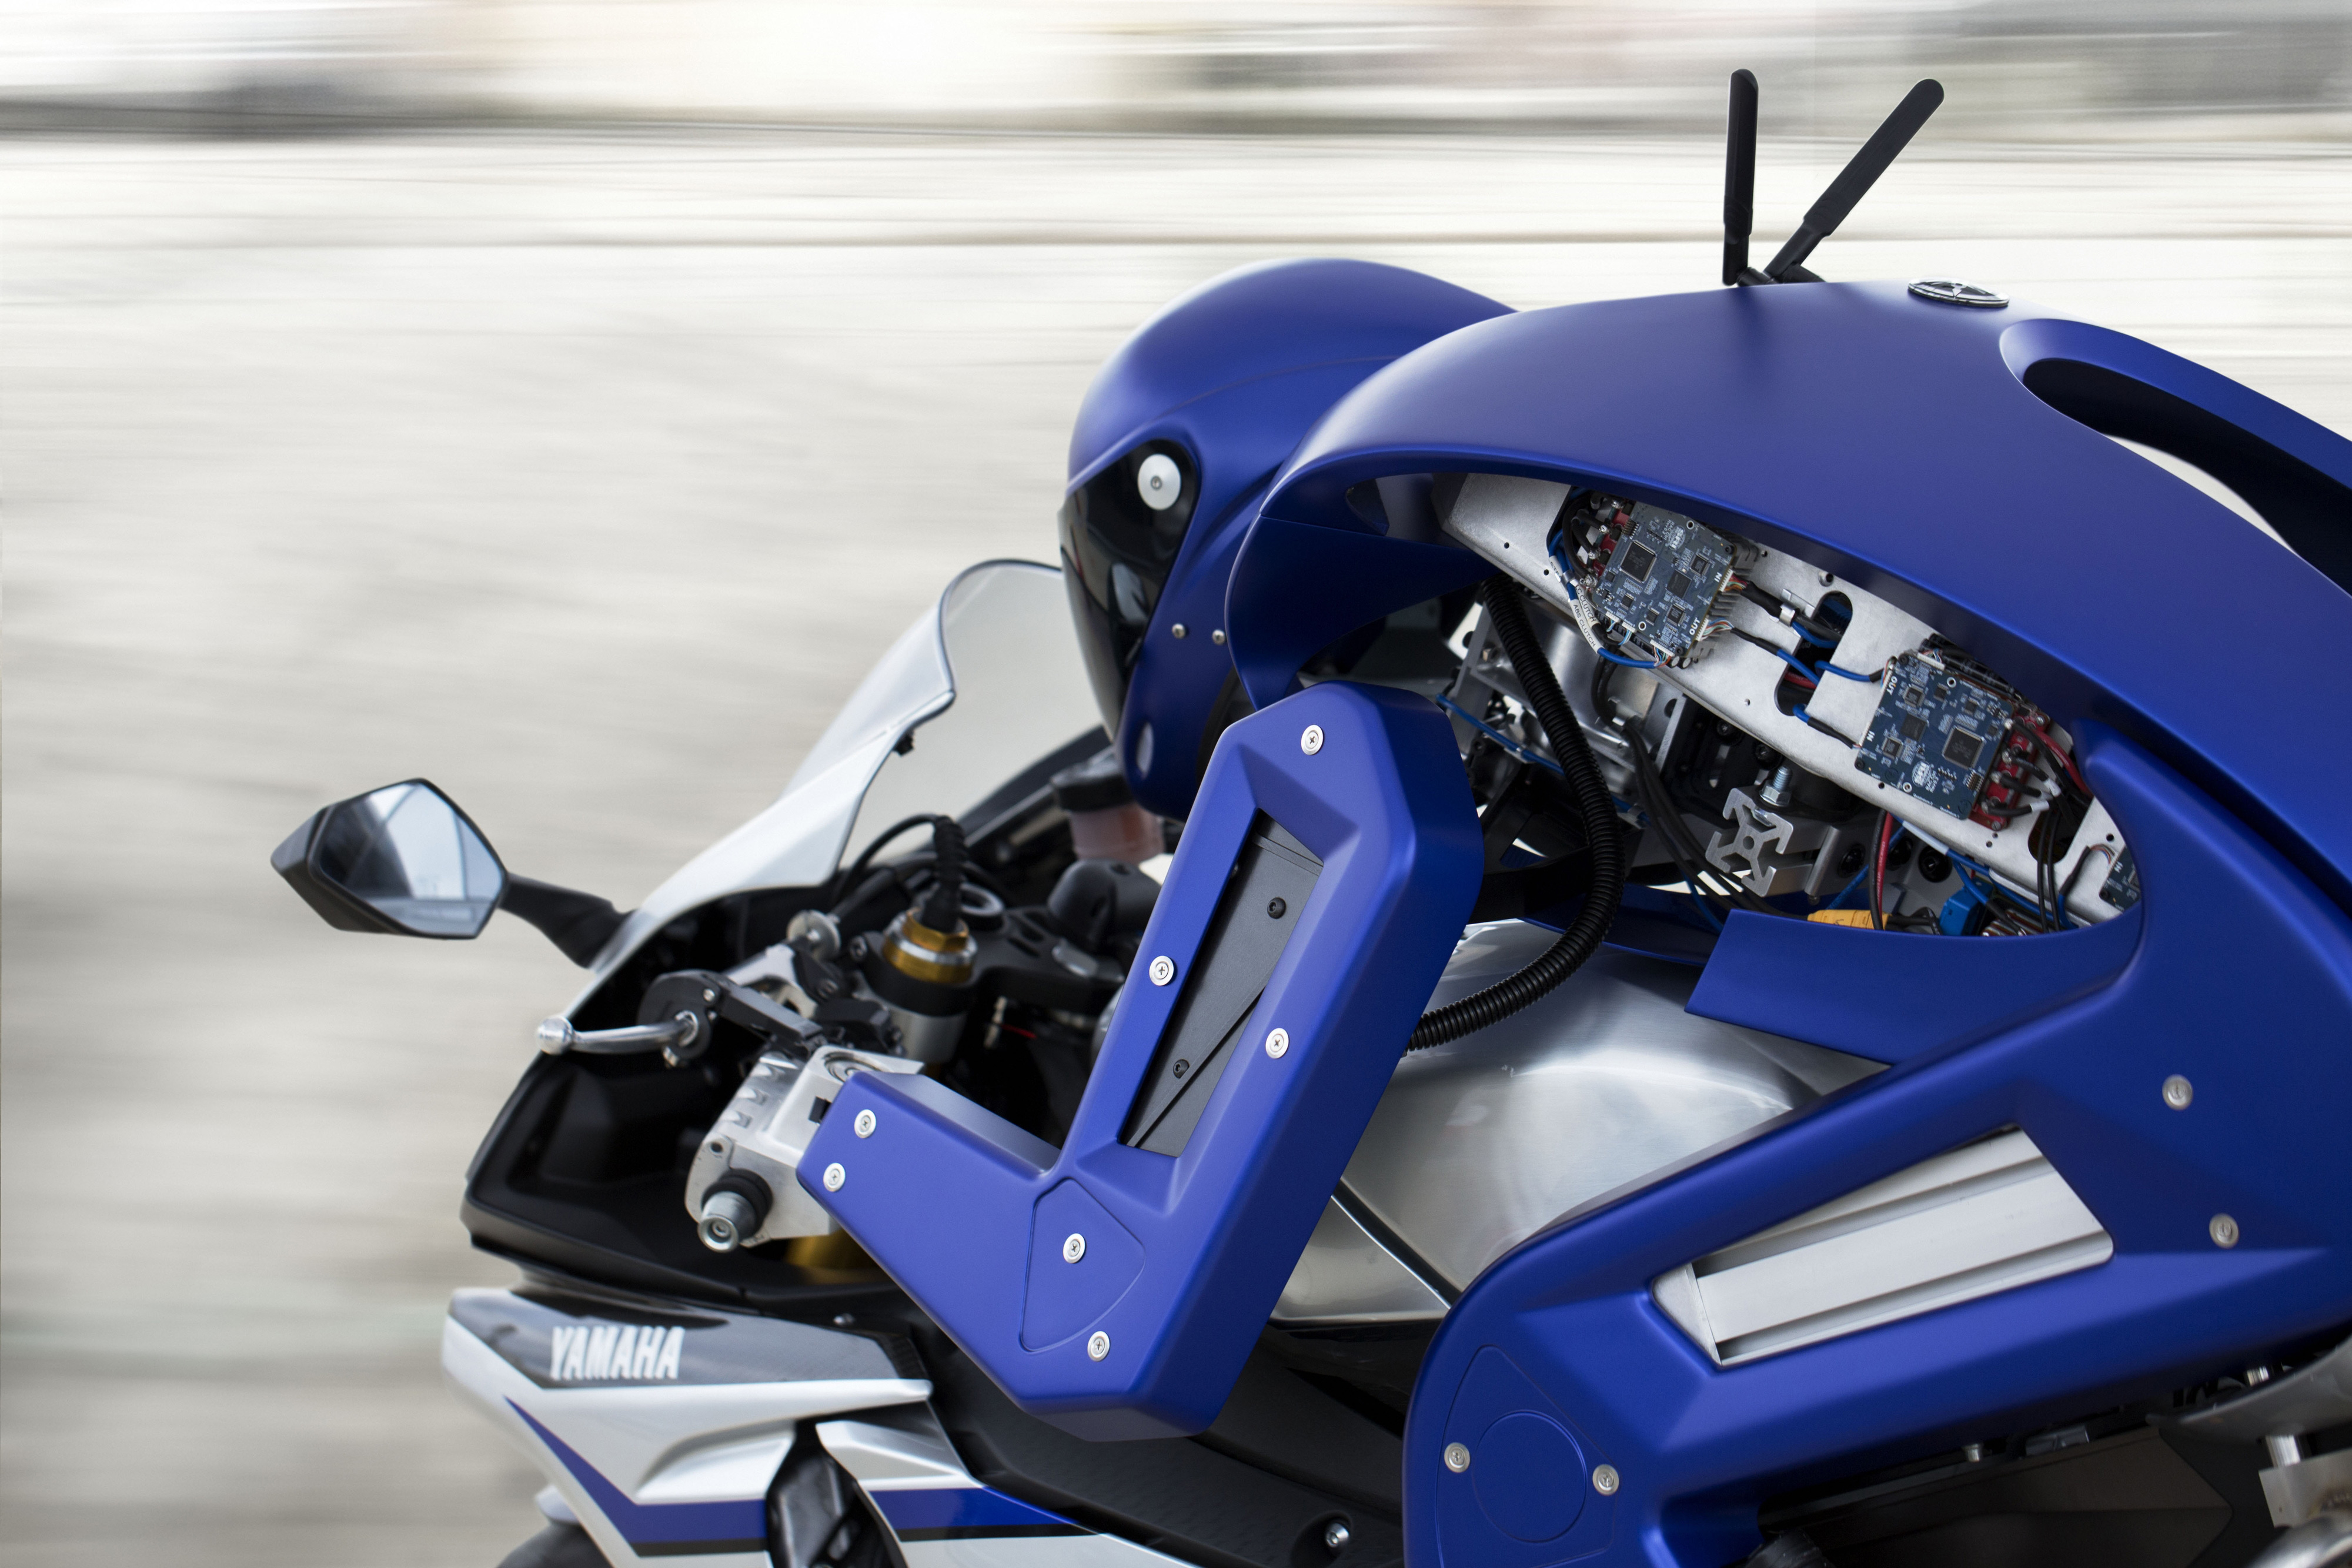 Meet the Yamaha Motobot